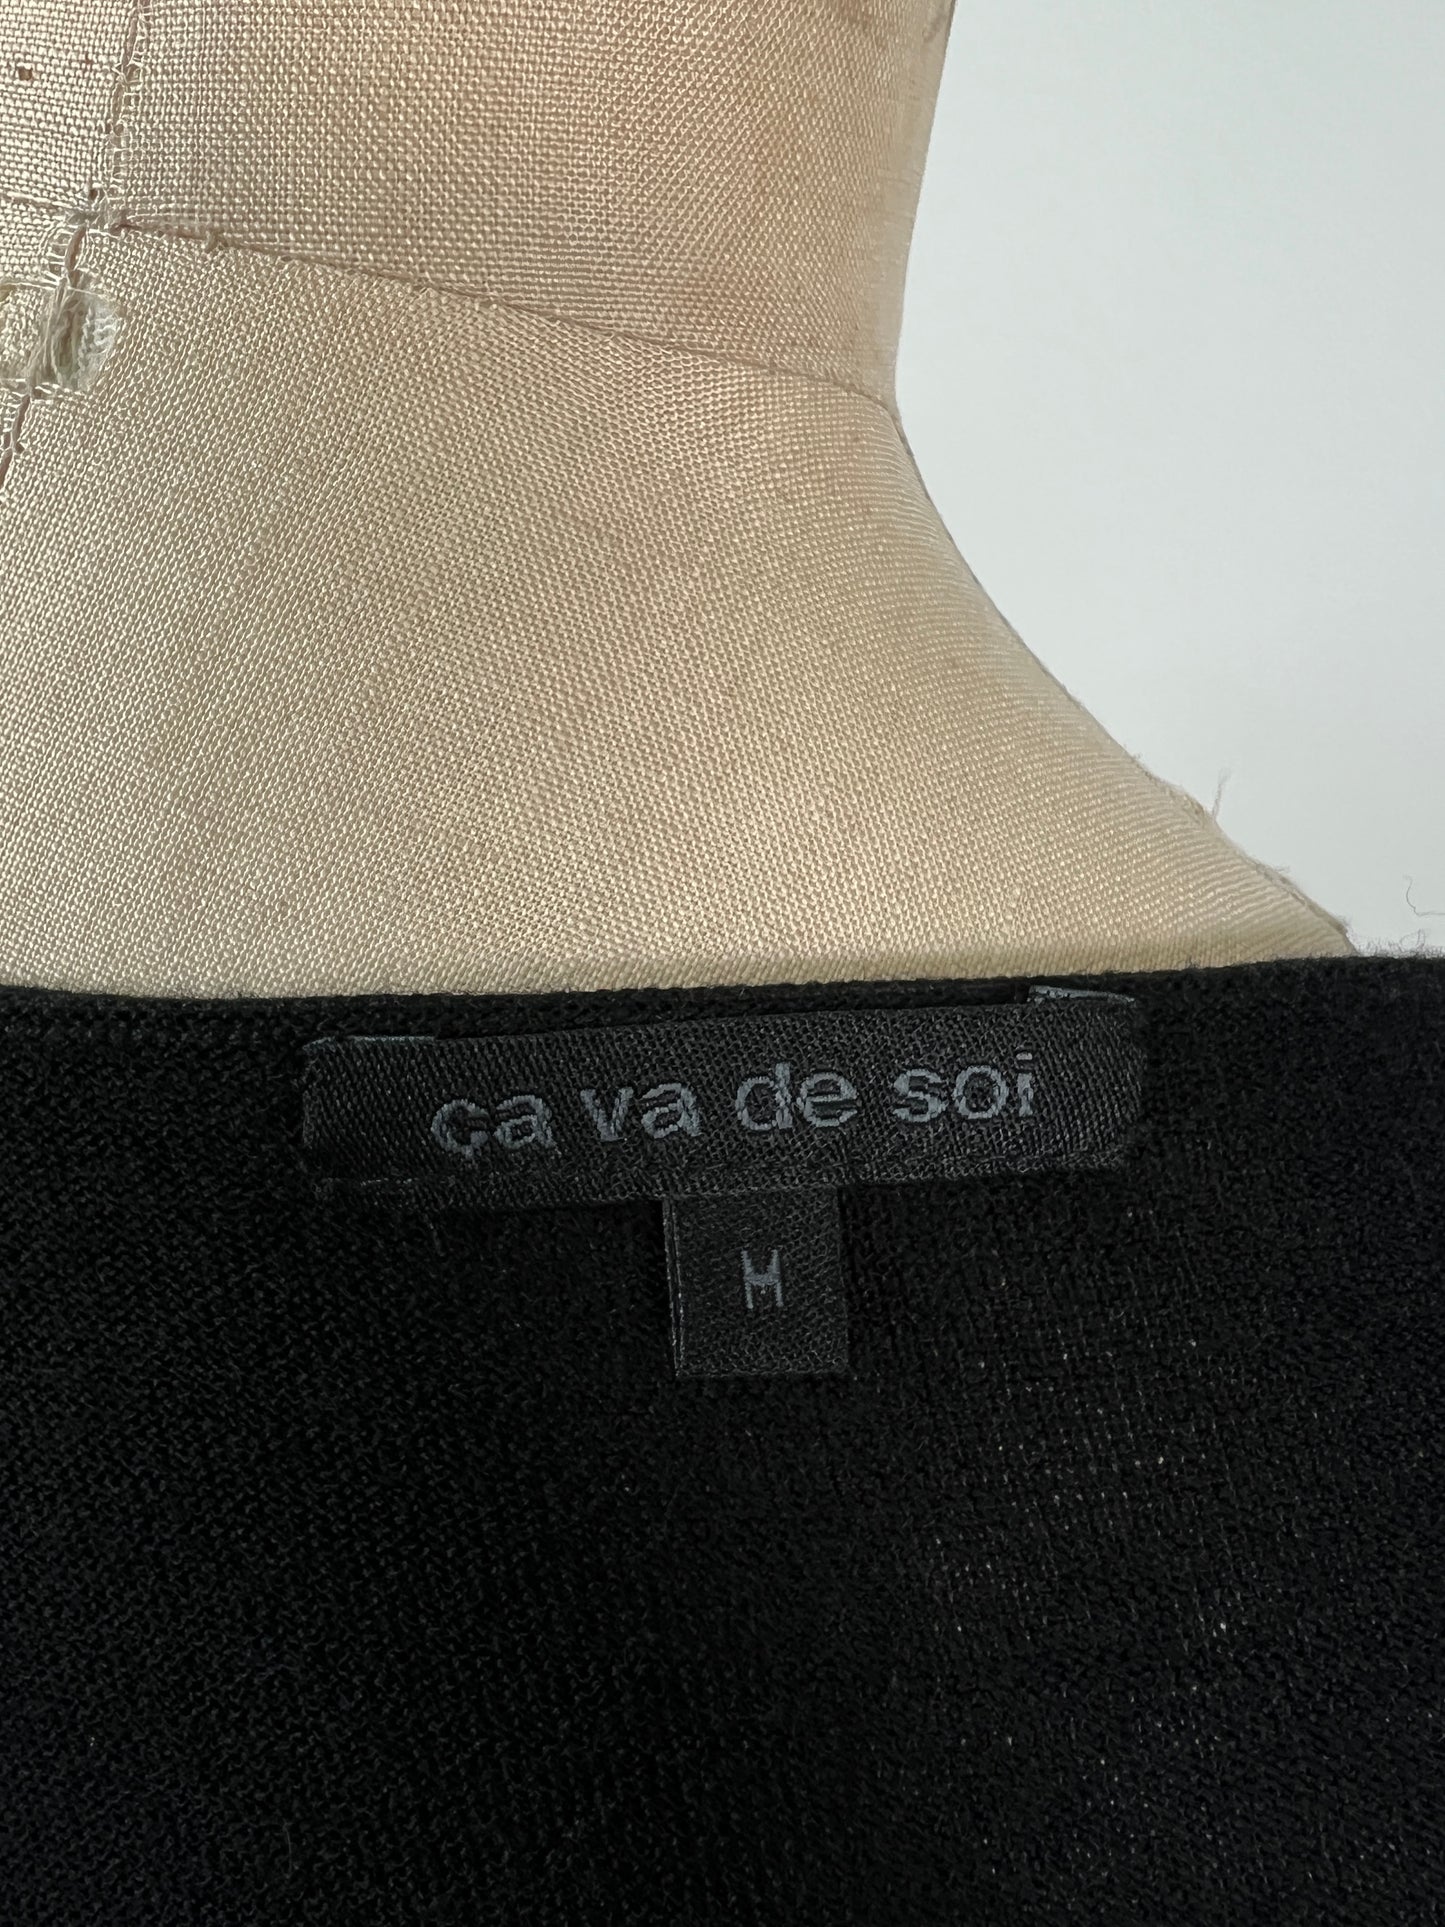 Robe noire classique en tricot mérinos (XS)